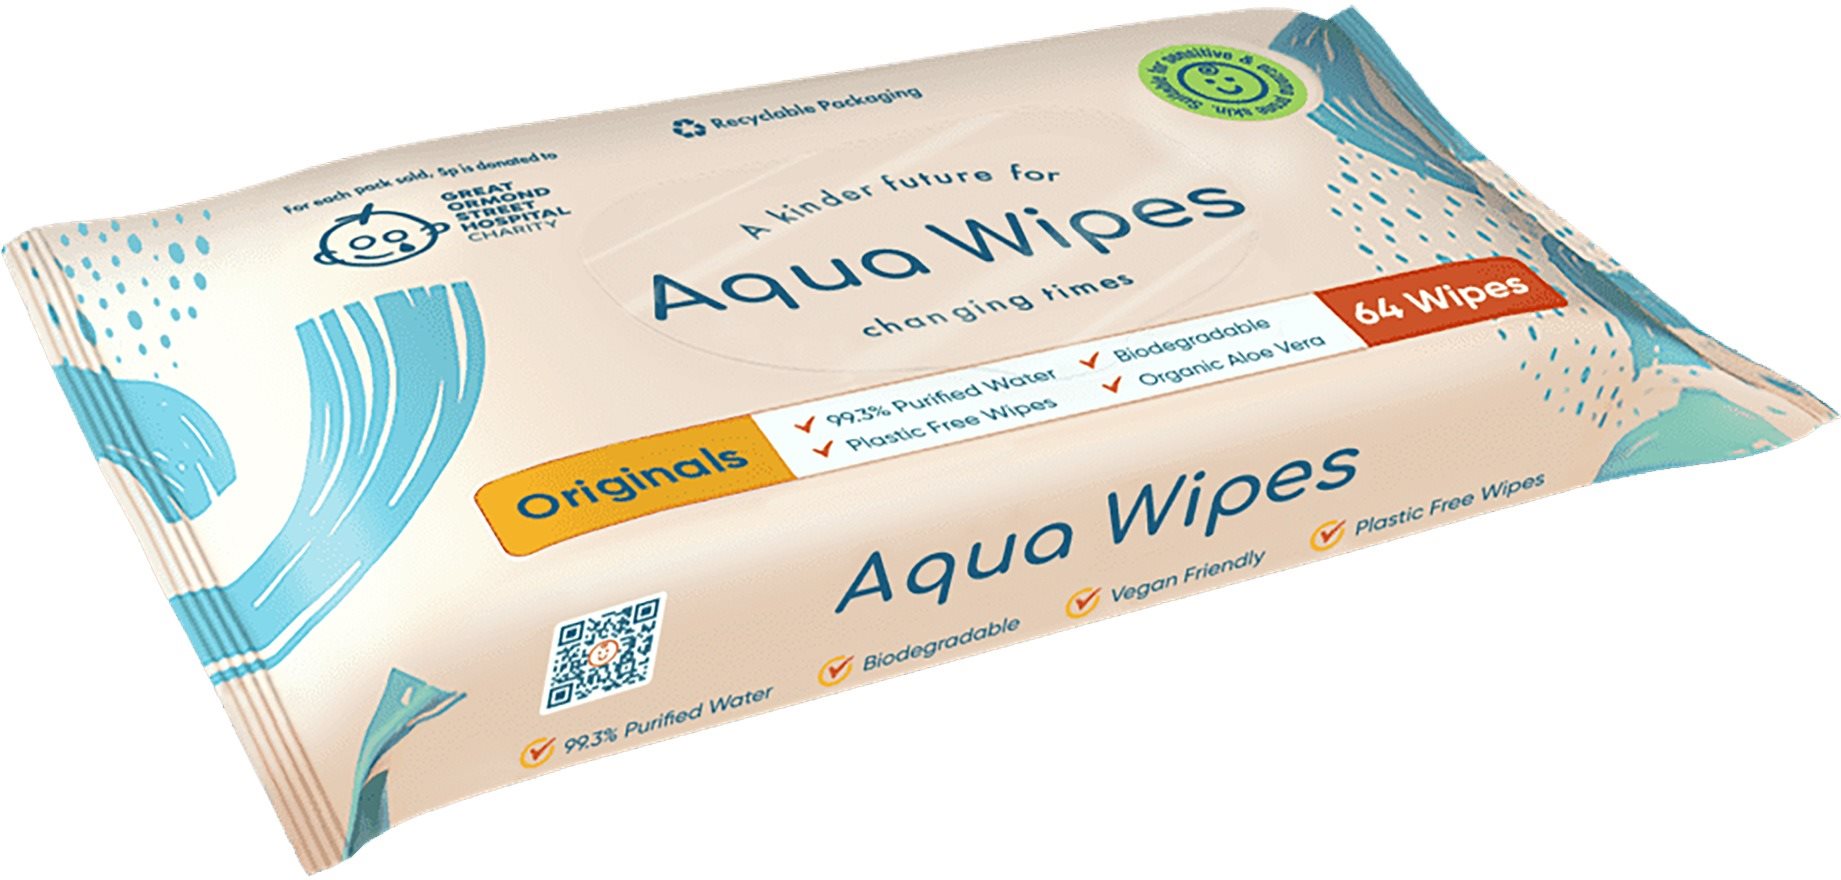 Aqua Wipes BIO Aloe Vera 100%-ban lebomló törlőkendők, 99% víz, 64 db